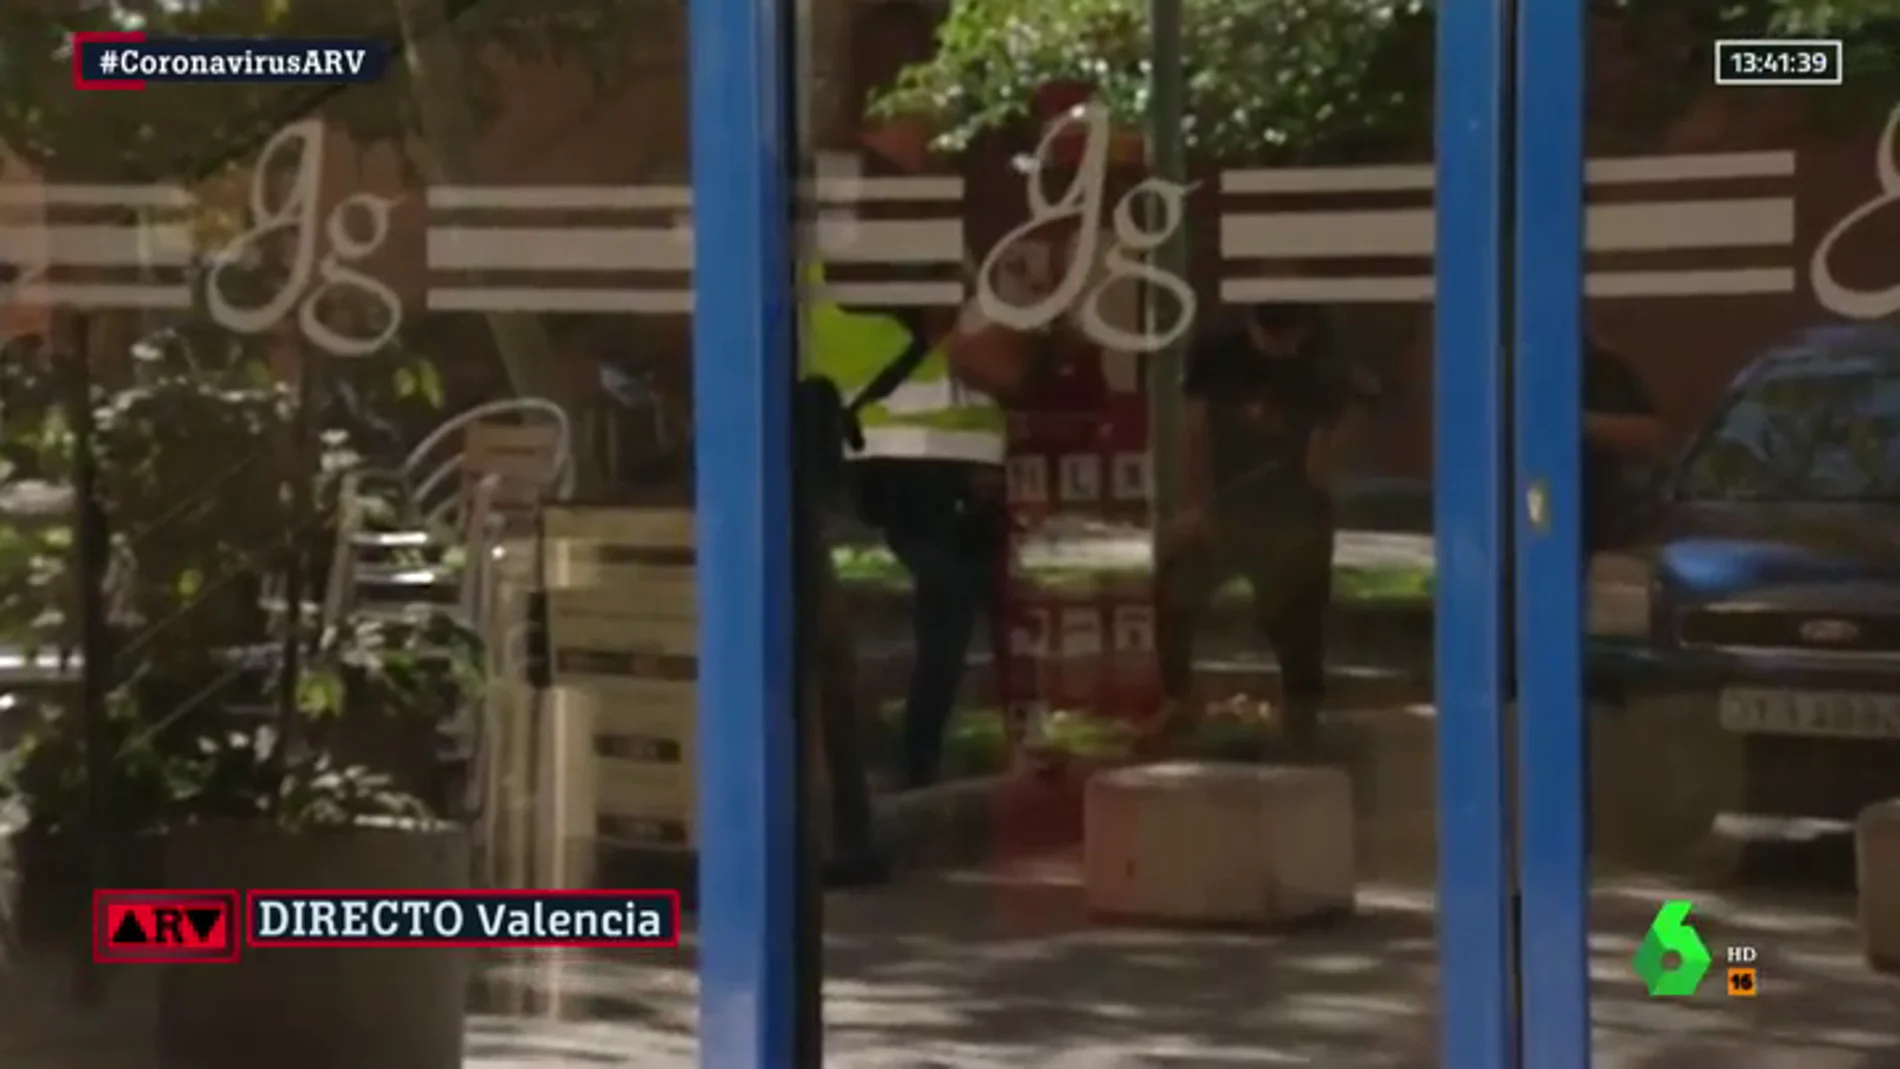 La Generalitat envía a la Policía al colegio mayor de Valencia para investigar la fiesta universitaria del brote de COVID